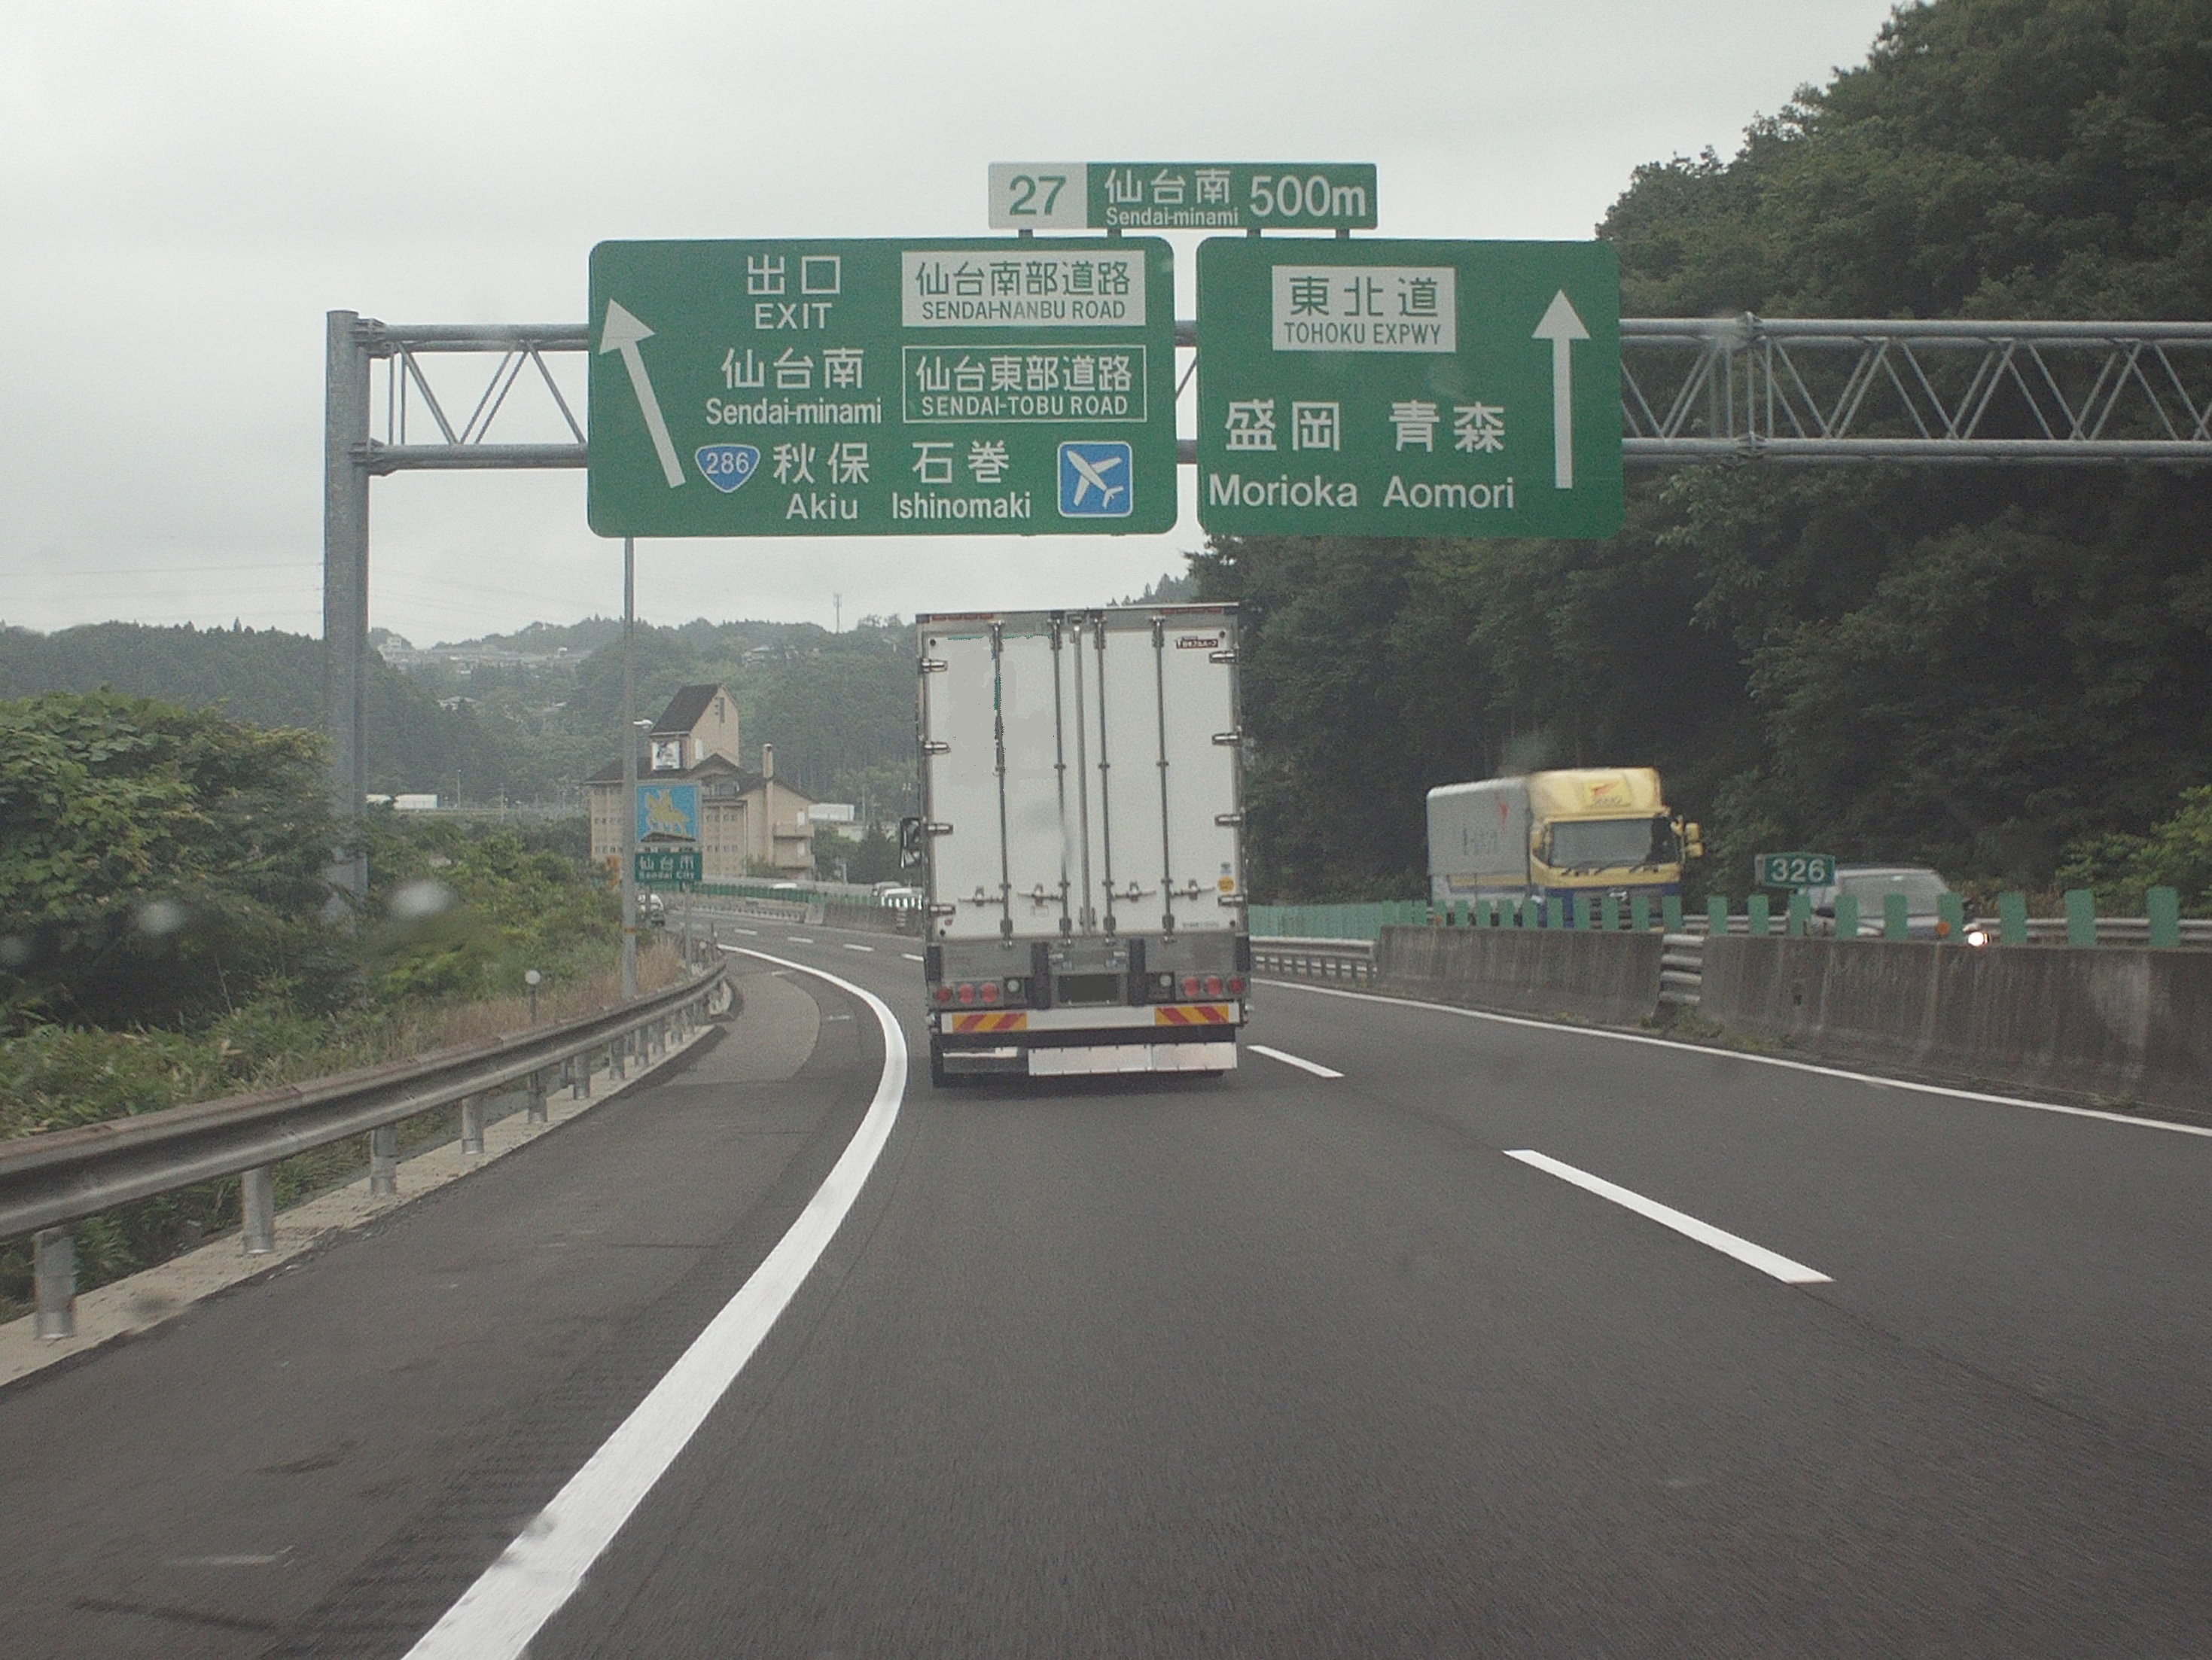 東北自動車道の仙台南インターチェンジにて みちのく案内標識よもやま話